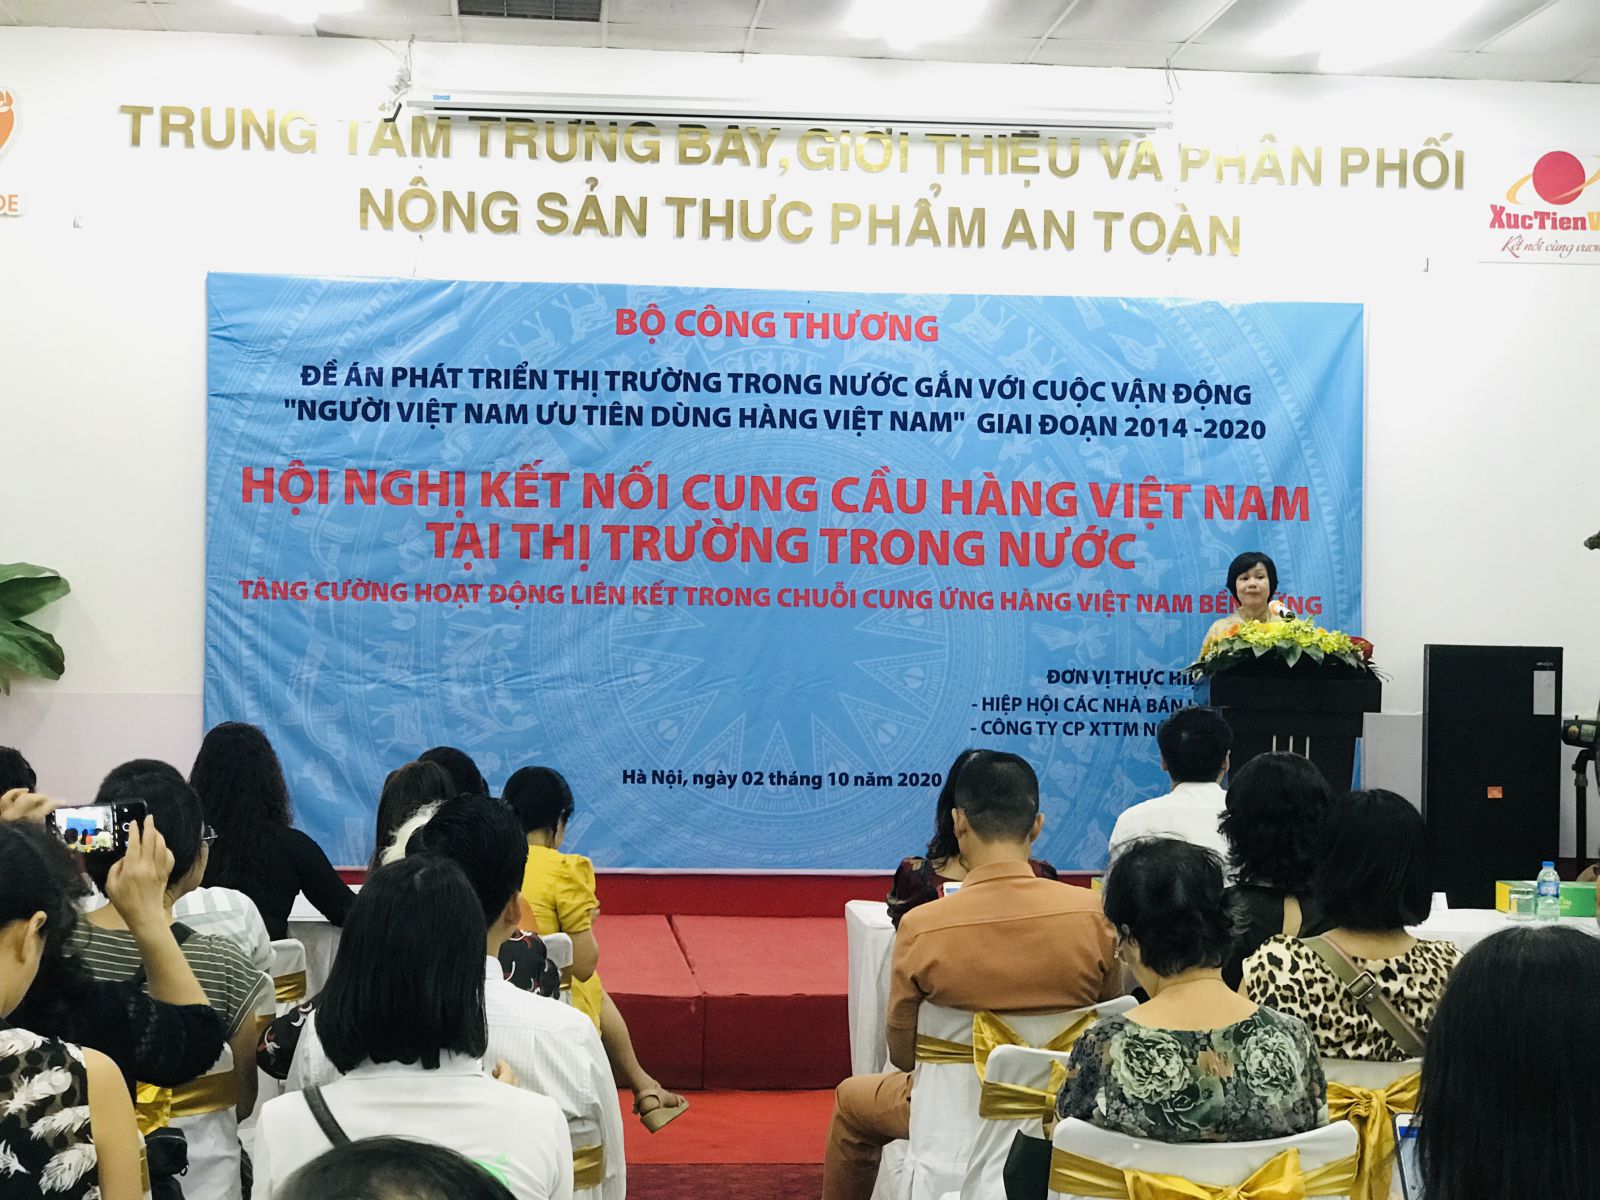 Bà Lê Việt Nga, Phó Vụ trưởng Vụ Thi trường trong nước - Bộ Công Thương phát biểu tại Hội nghị 